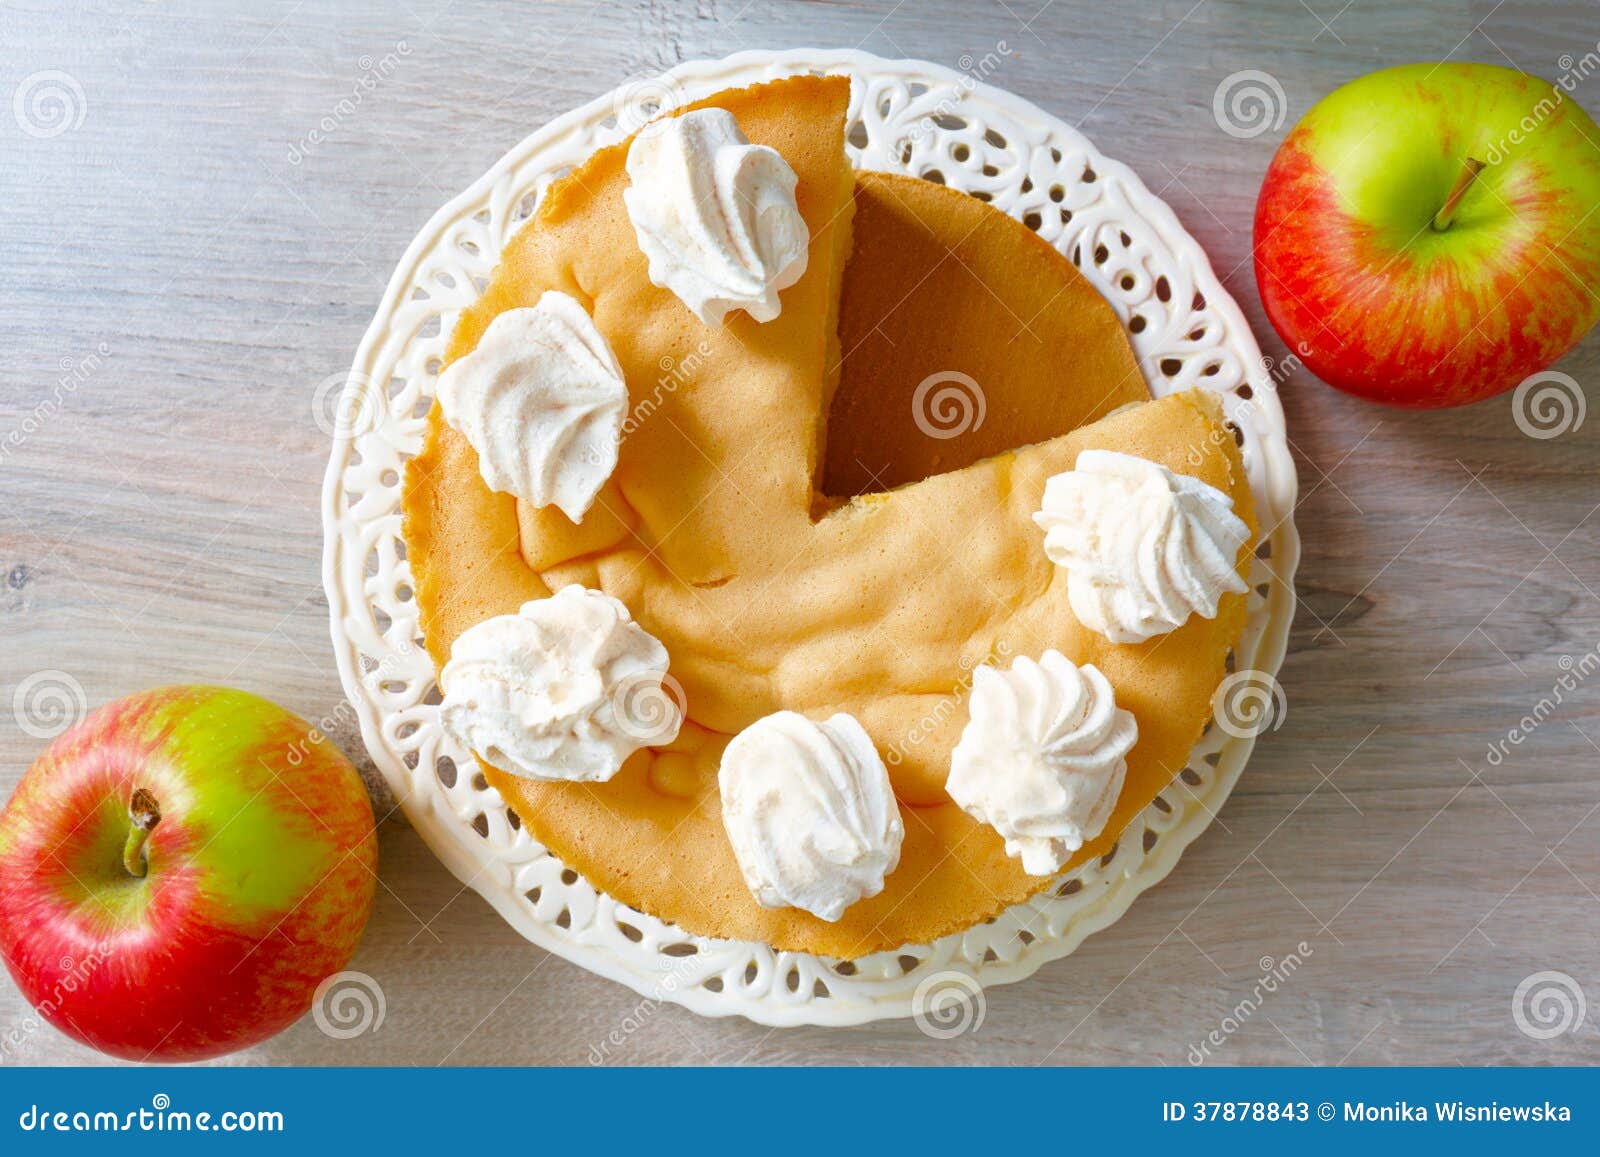 超简单快手的苹果千层蛋糕的做法步骤图 - 君之博客|阳光烘站